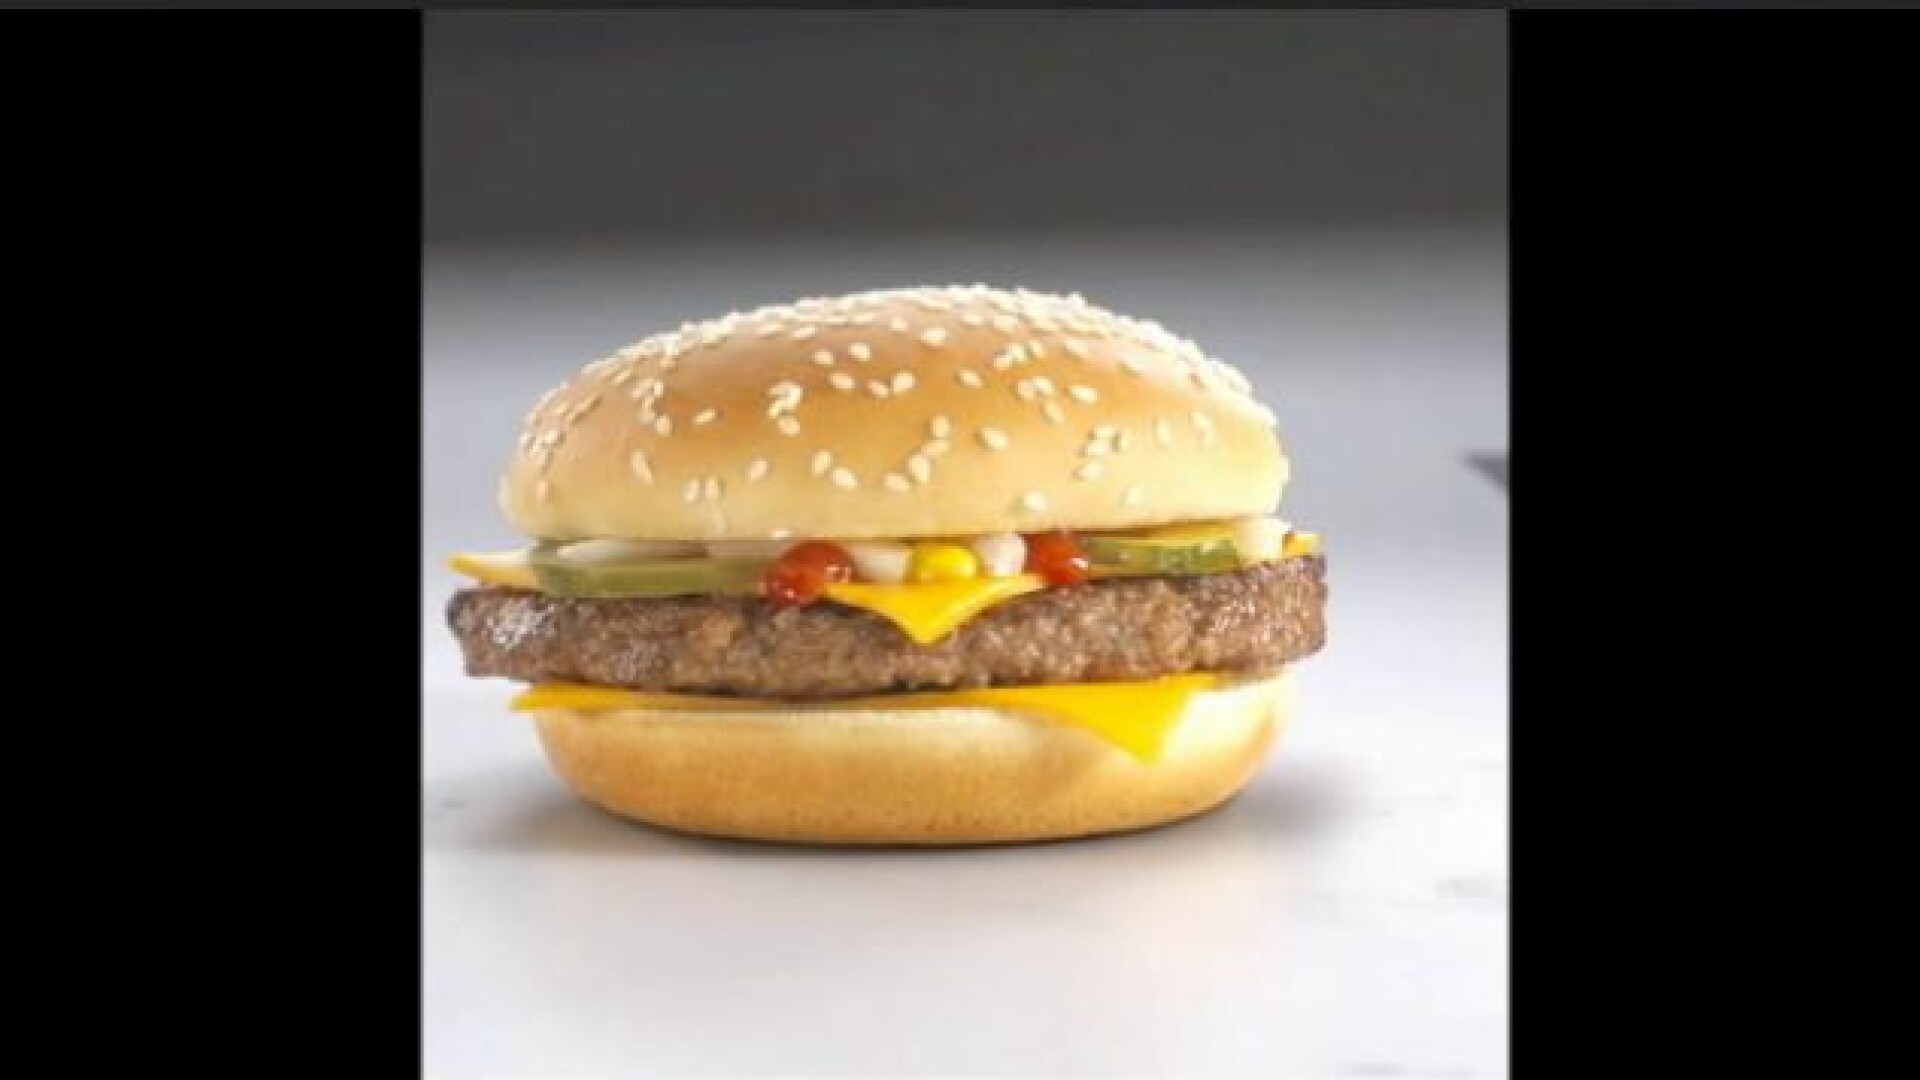 hamburger, McDonald's